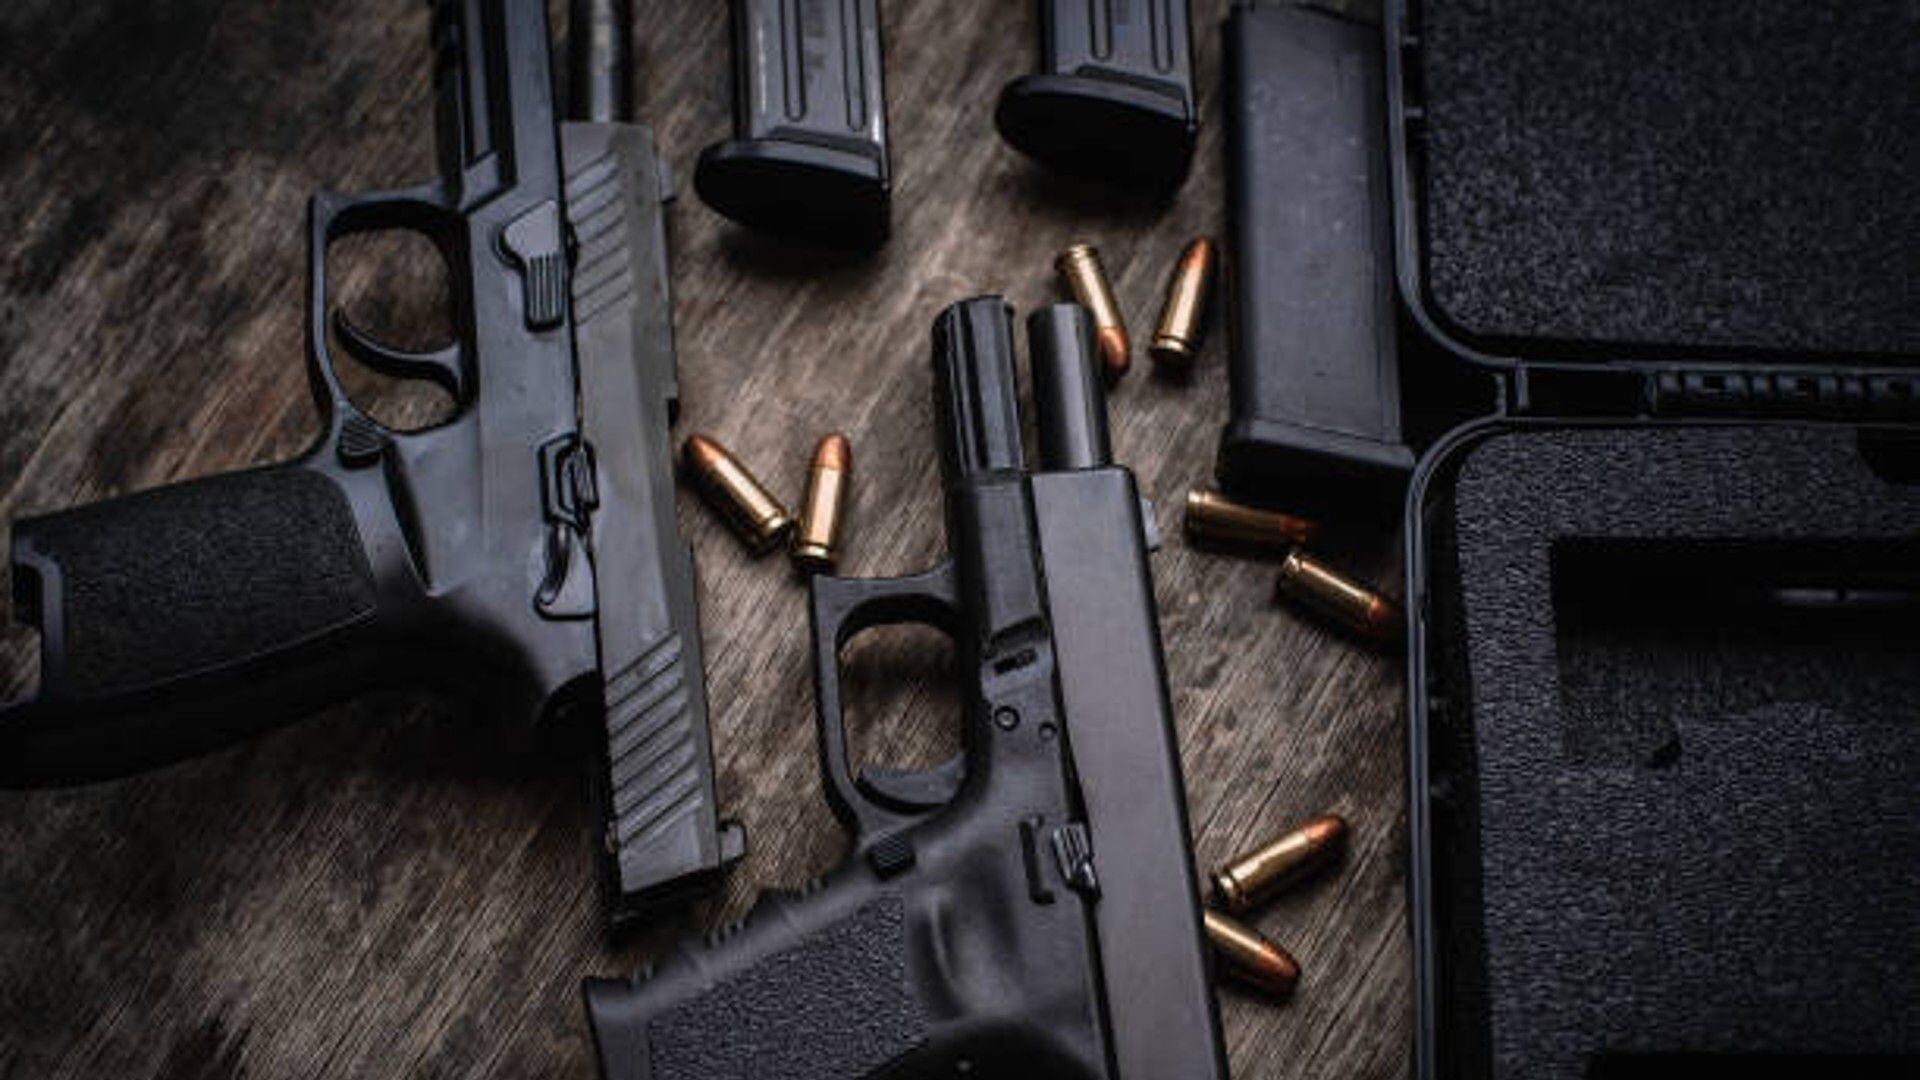 Los hombres distribuían armas y municiones a la delincuencia común en Ciudad Bolívar, (imagen de referencia)  - crédito iStock / Página oficial